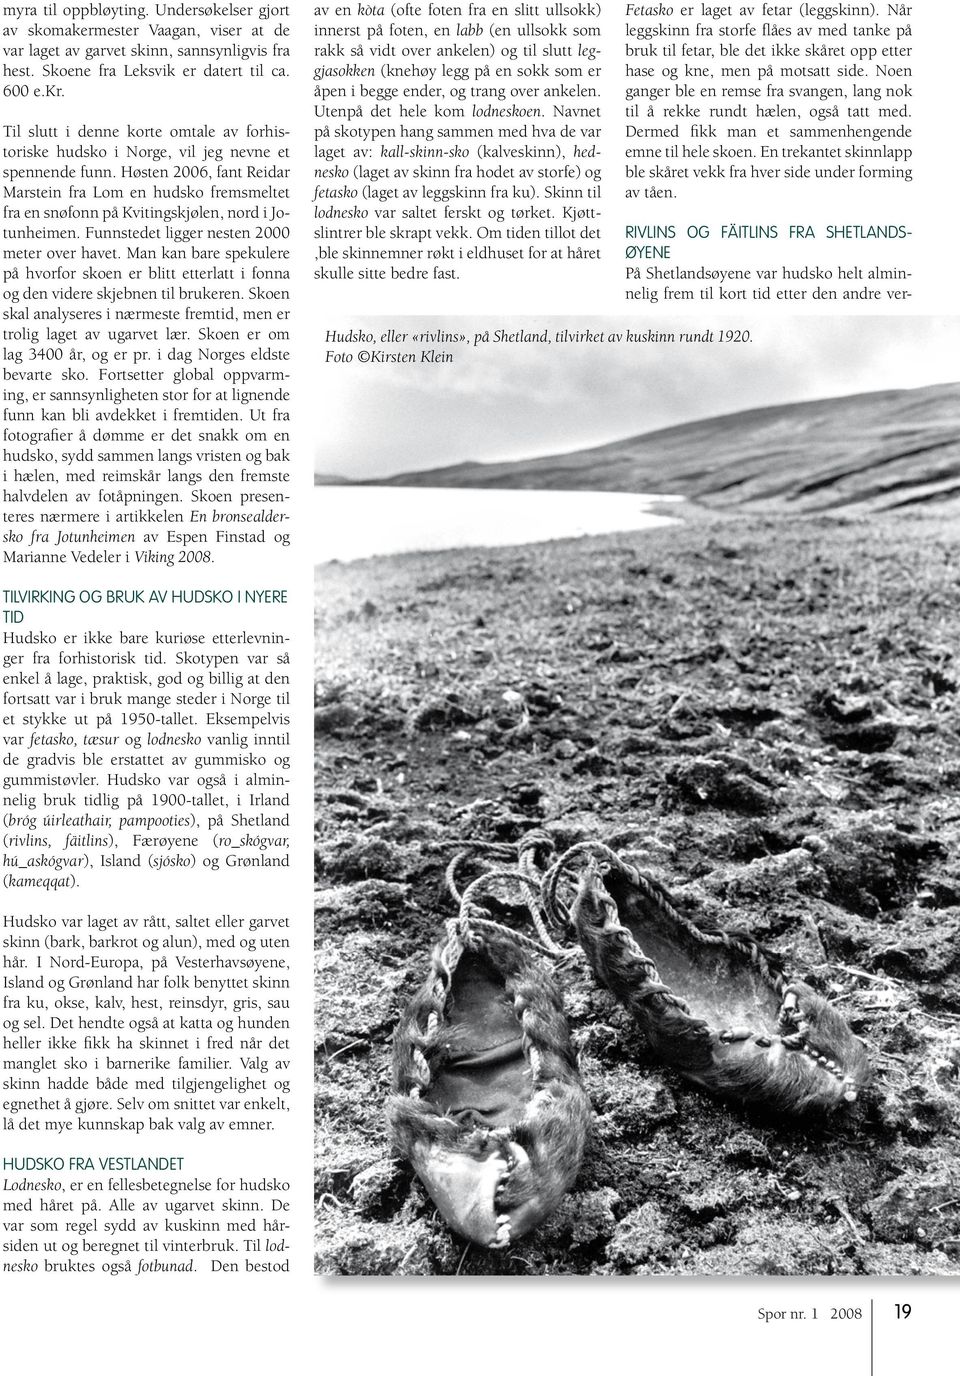 Høsten 2006, fant Reidar Marstein fra Lom en hudsko fremsmeltet fra en snøfonn på Kvitingskjølen, nord i Jotunheimen. Funnstedet ligger nesten 2000 meter over havet.